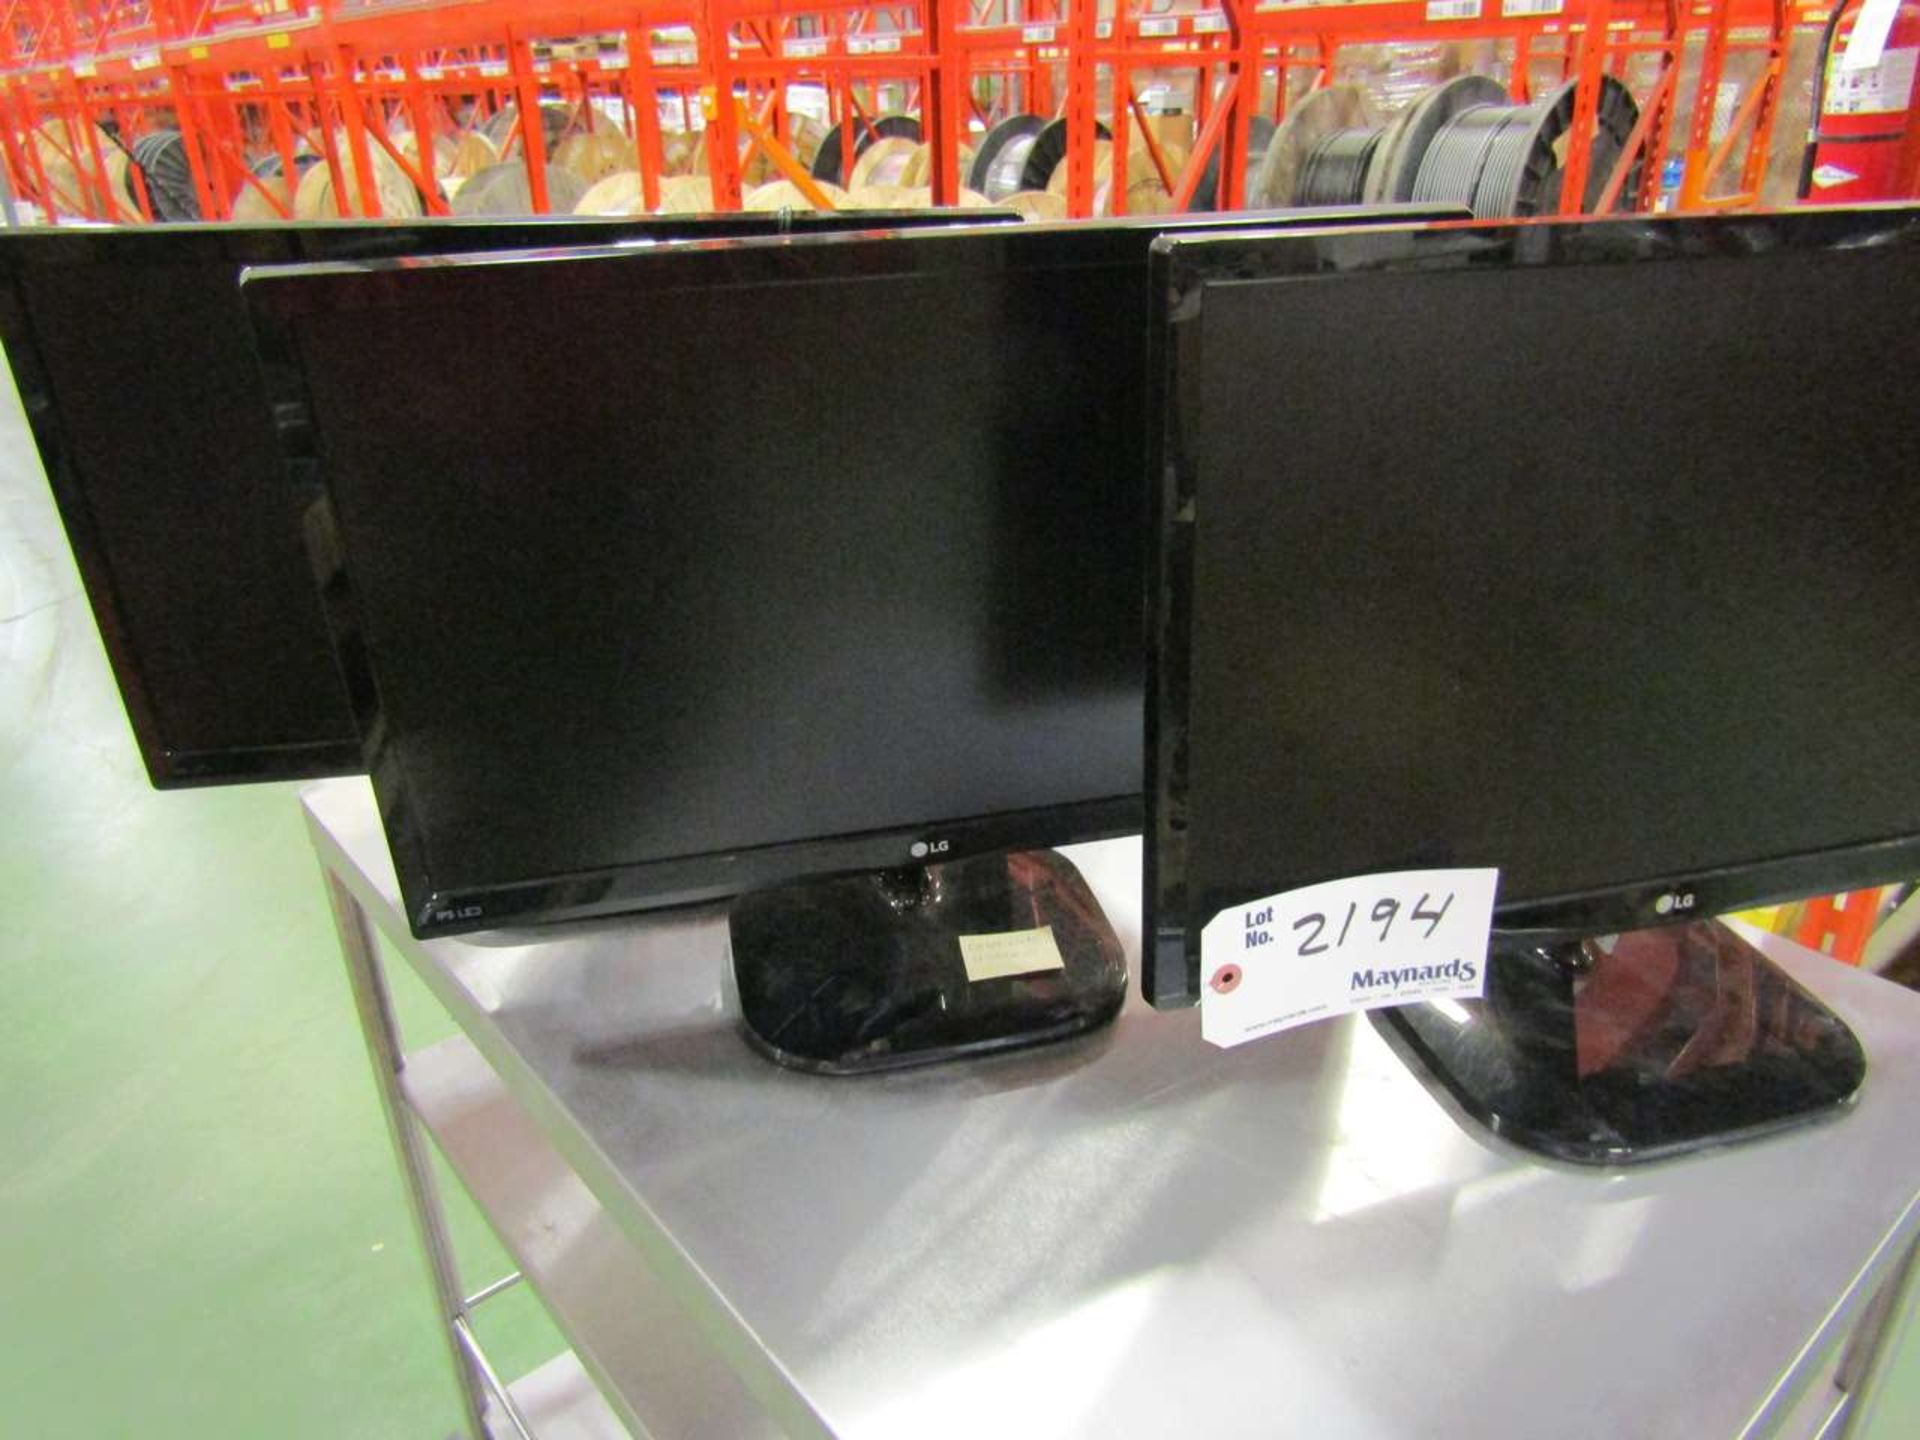 LG 22" LED Monitors